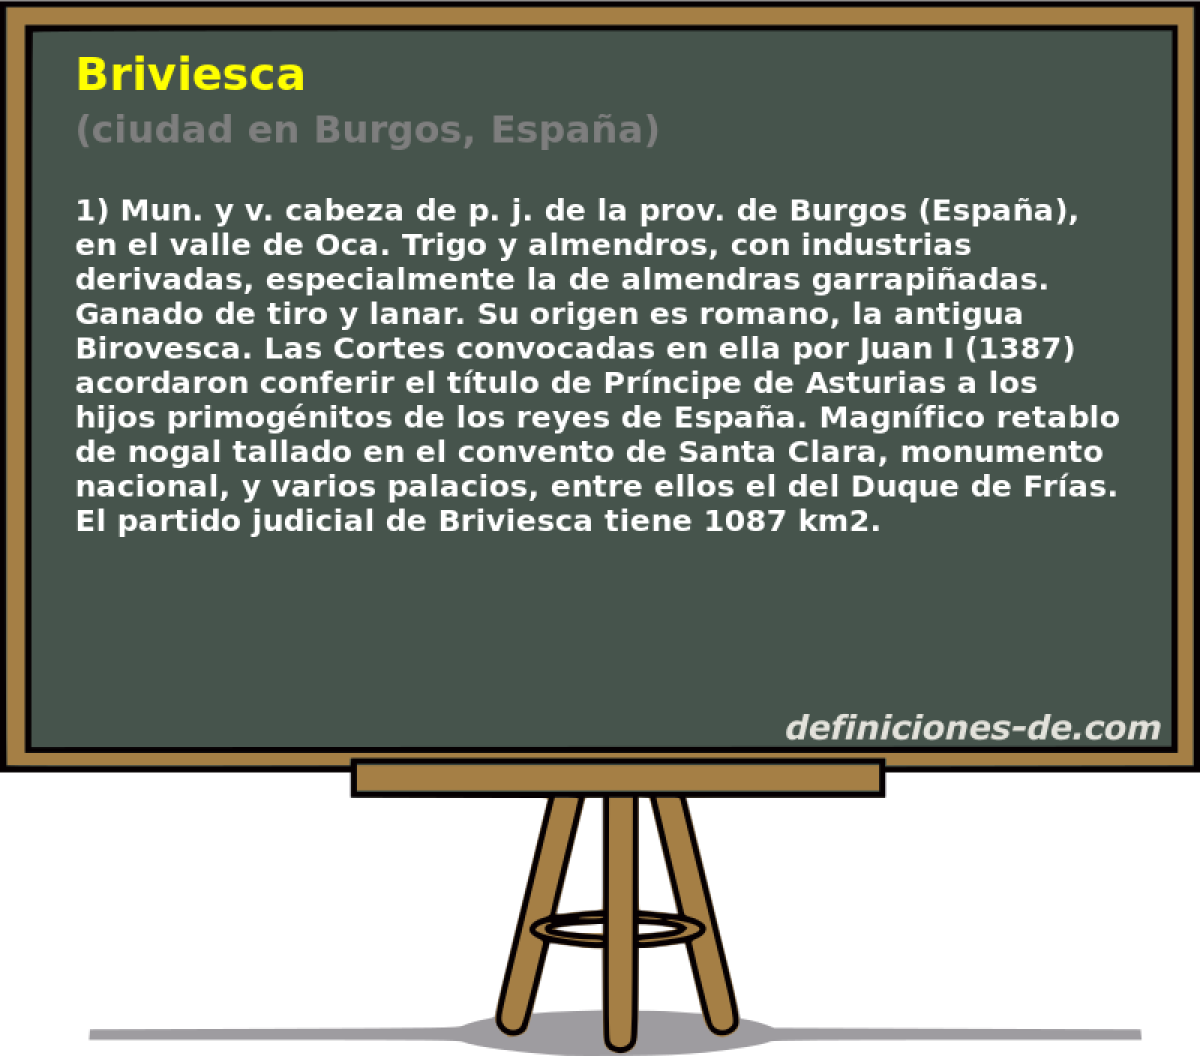 Briviesca (ciudad en Burgos, Espaa)